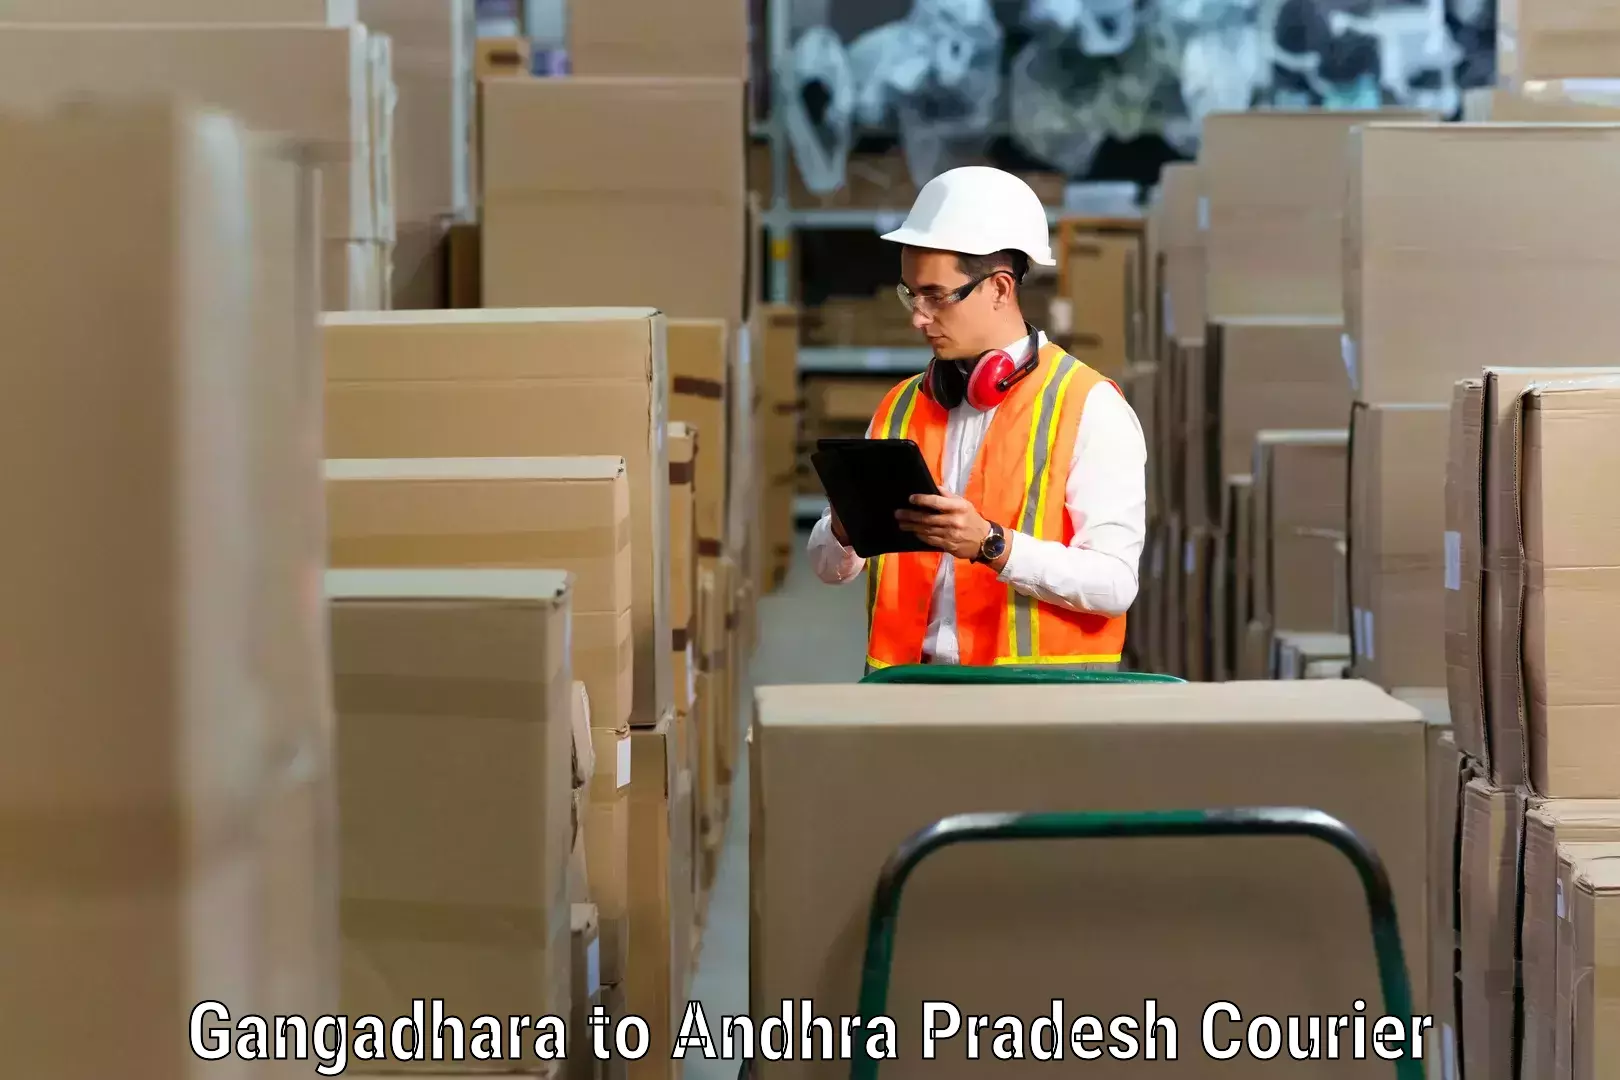 Furniture transport and storage in Gangadhara to Chodavaram